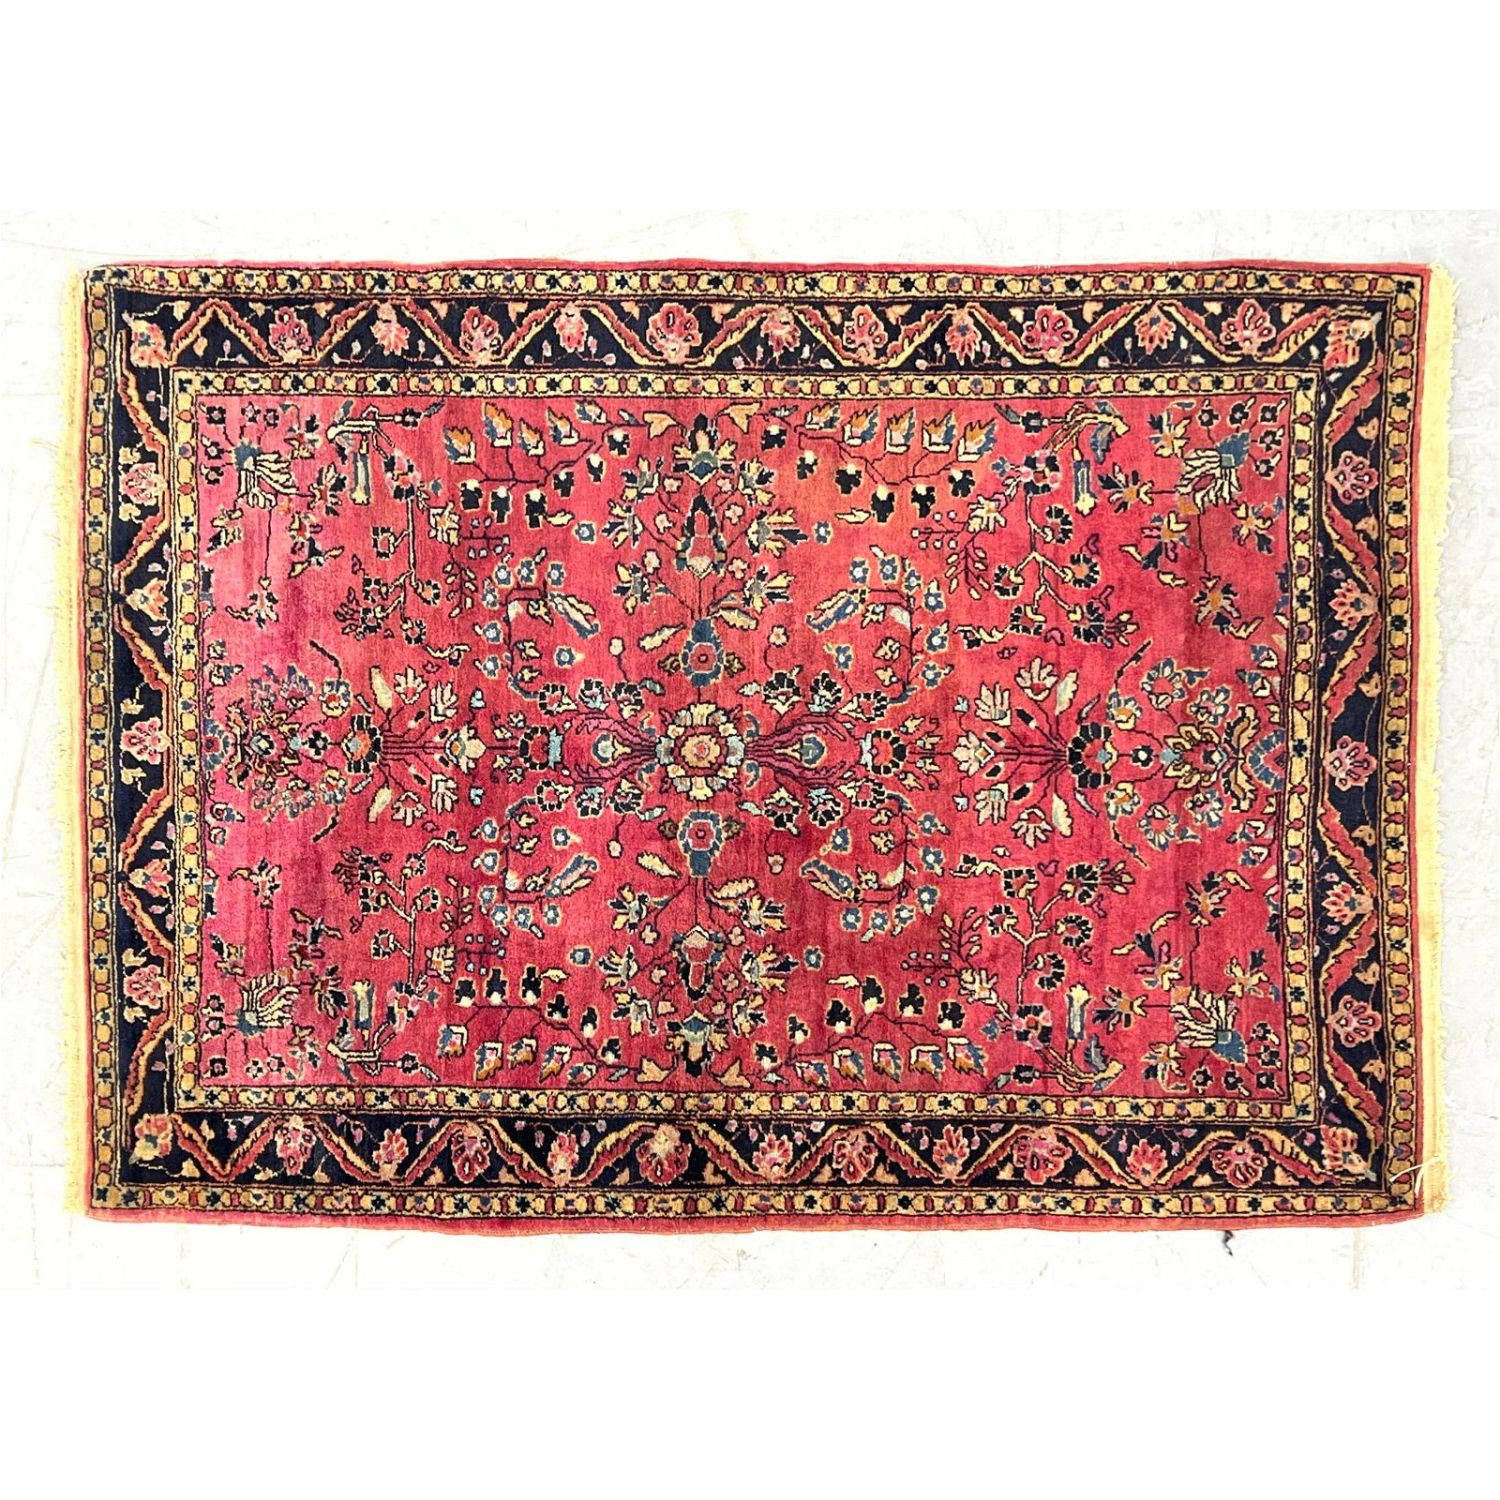 3 8 x 4 6 Sarouk Carpet Rug Red 362da2